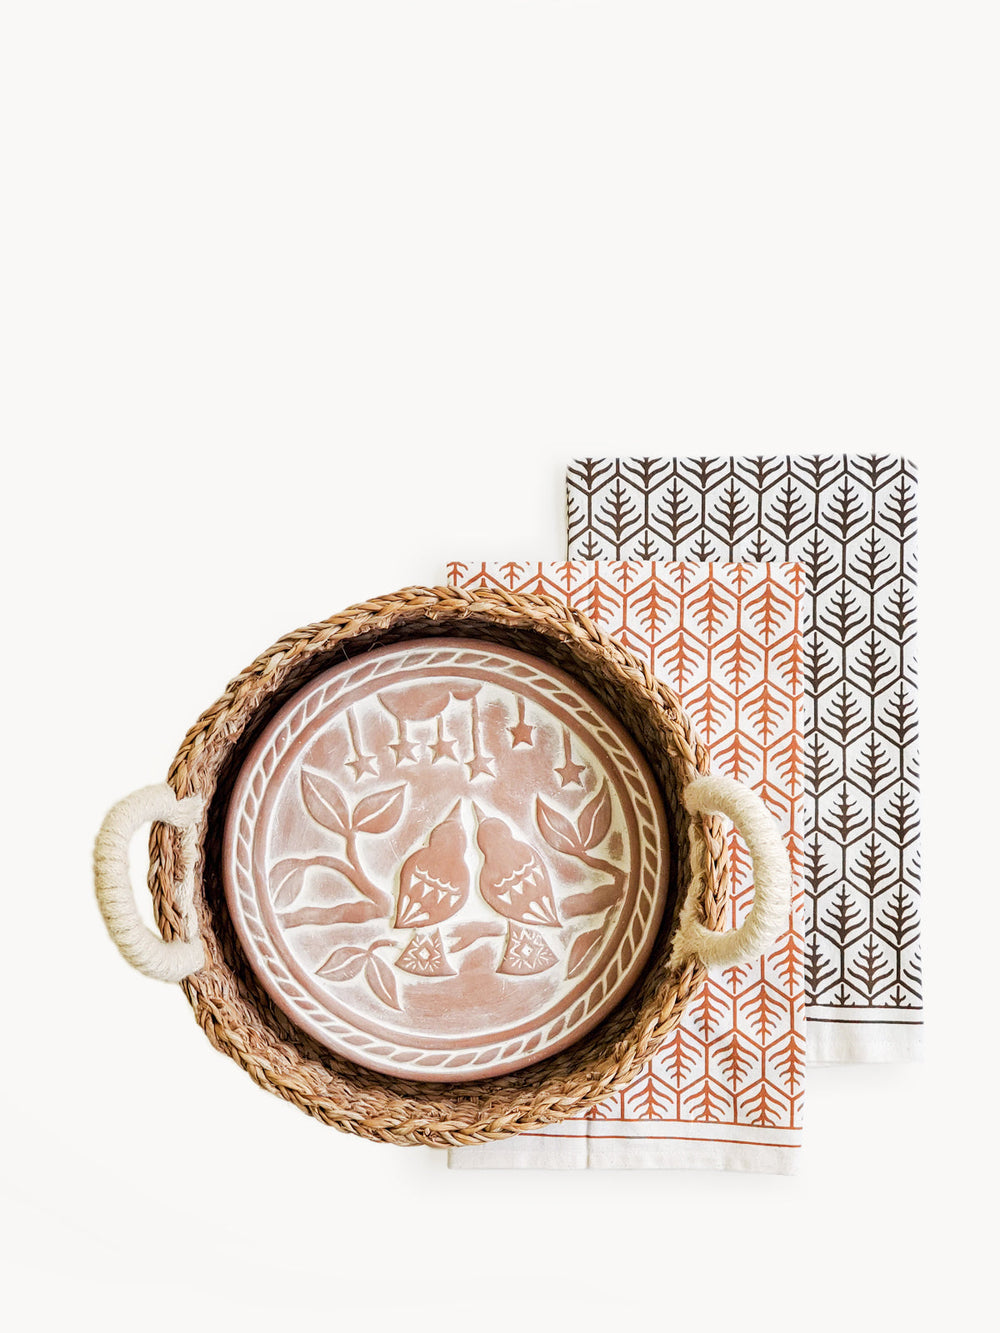 Bread Warmer & Basket Gift Set with Tea Towel - Lovebird Round by KORISSA